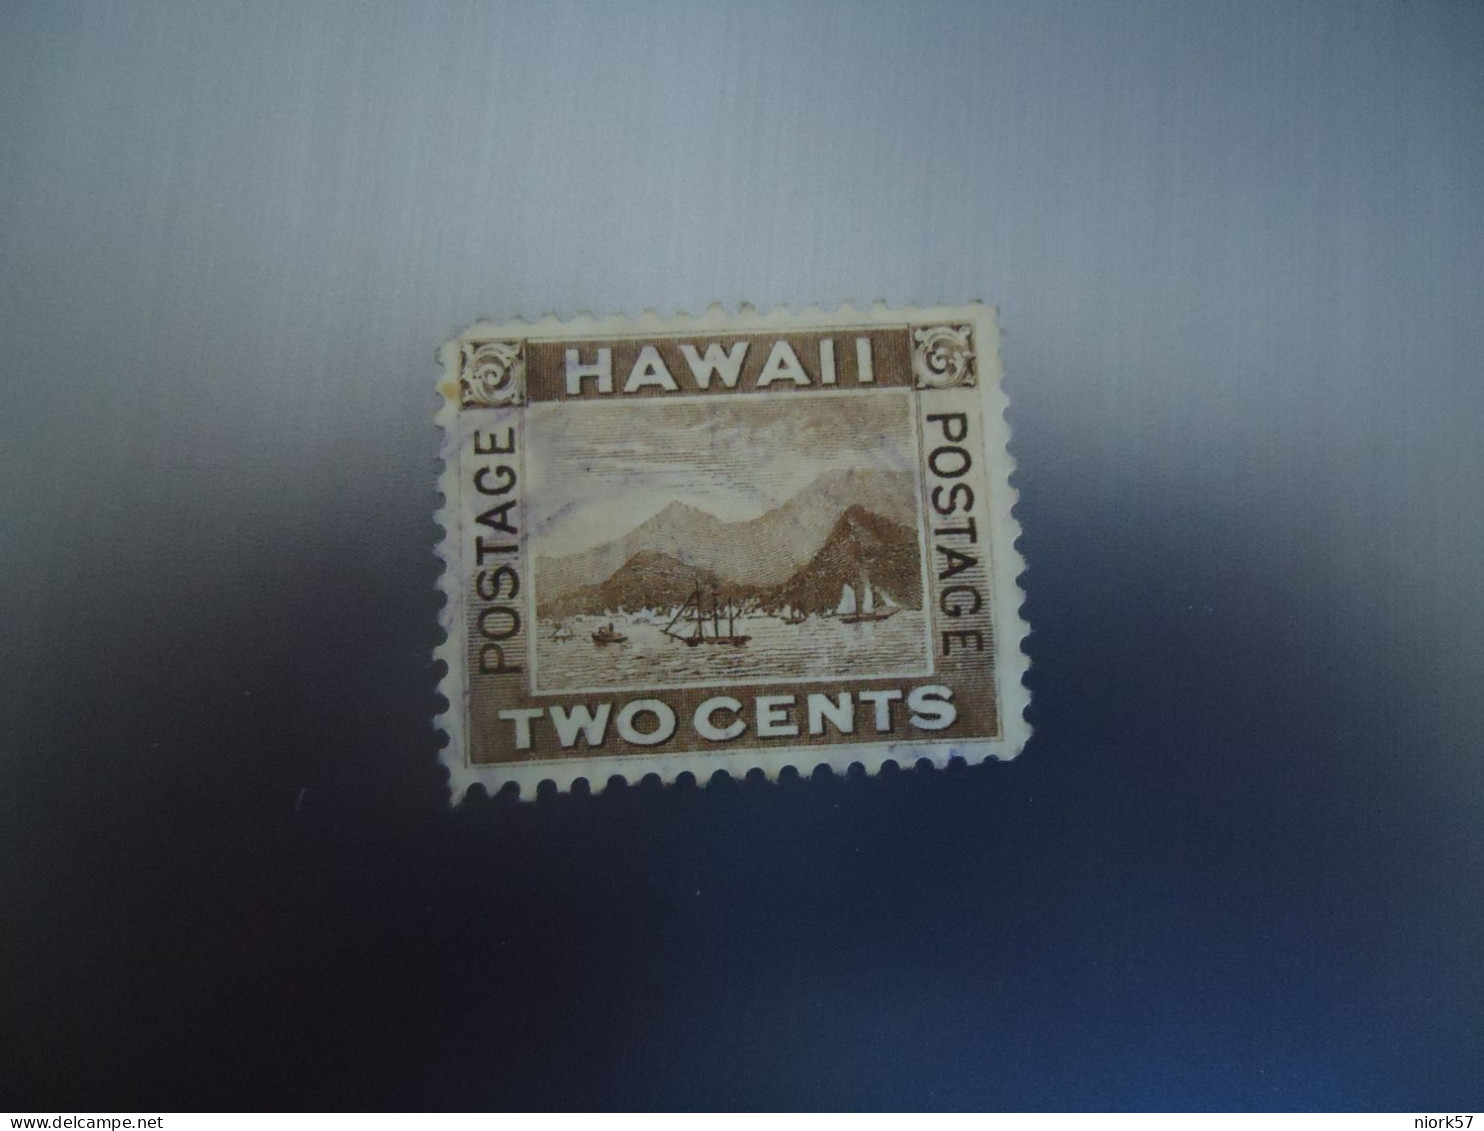 HAWAI USED STAMPS LANDSCAPES - Hawaï